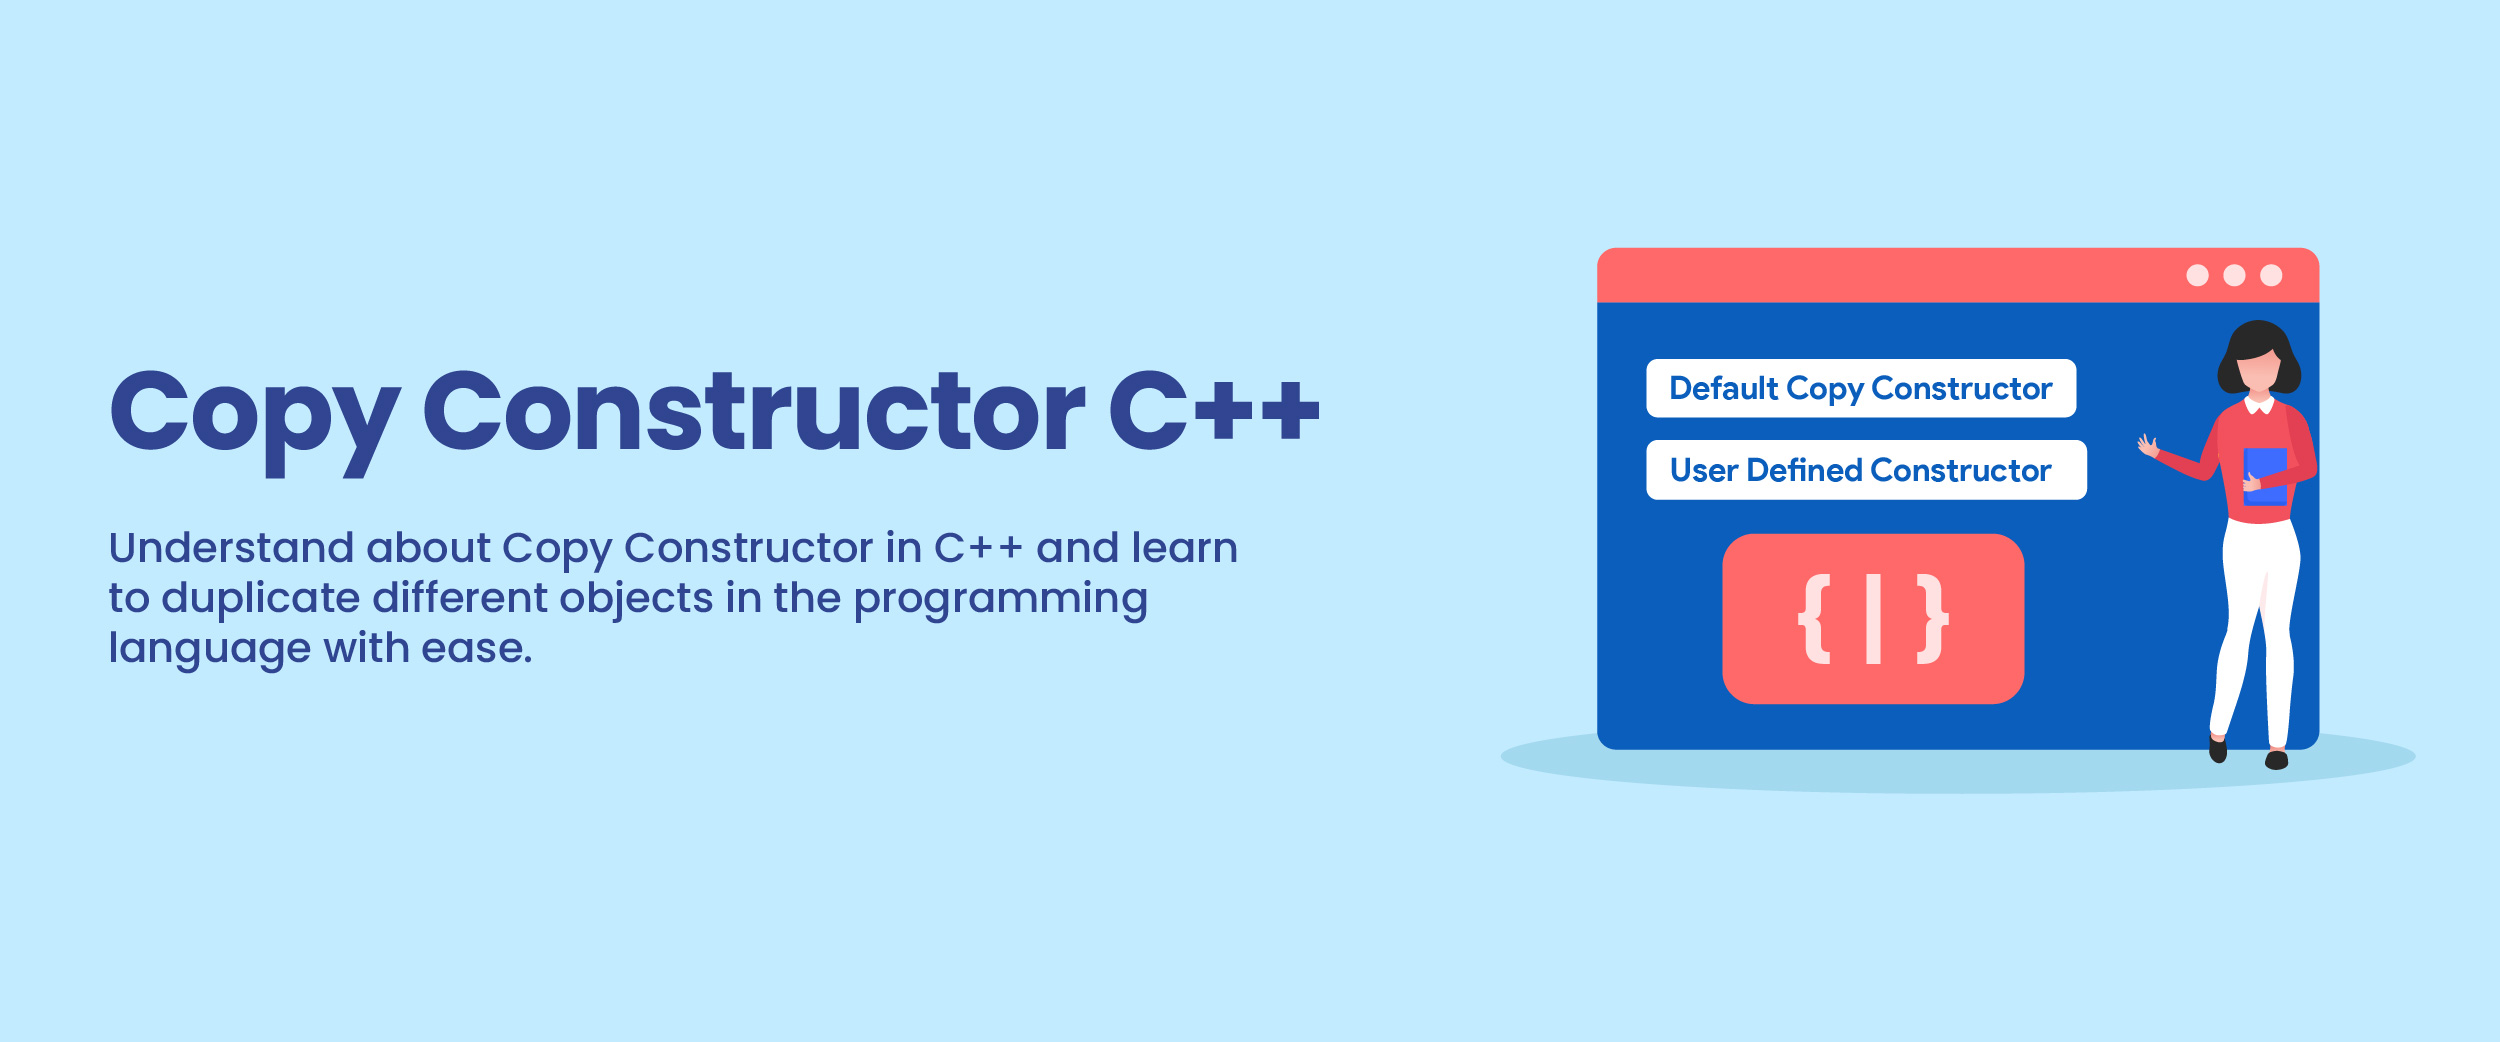 Copy Constructor in C++